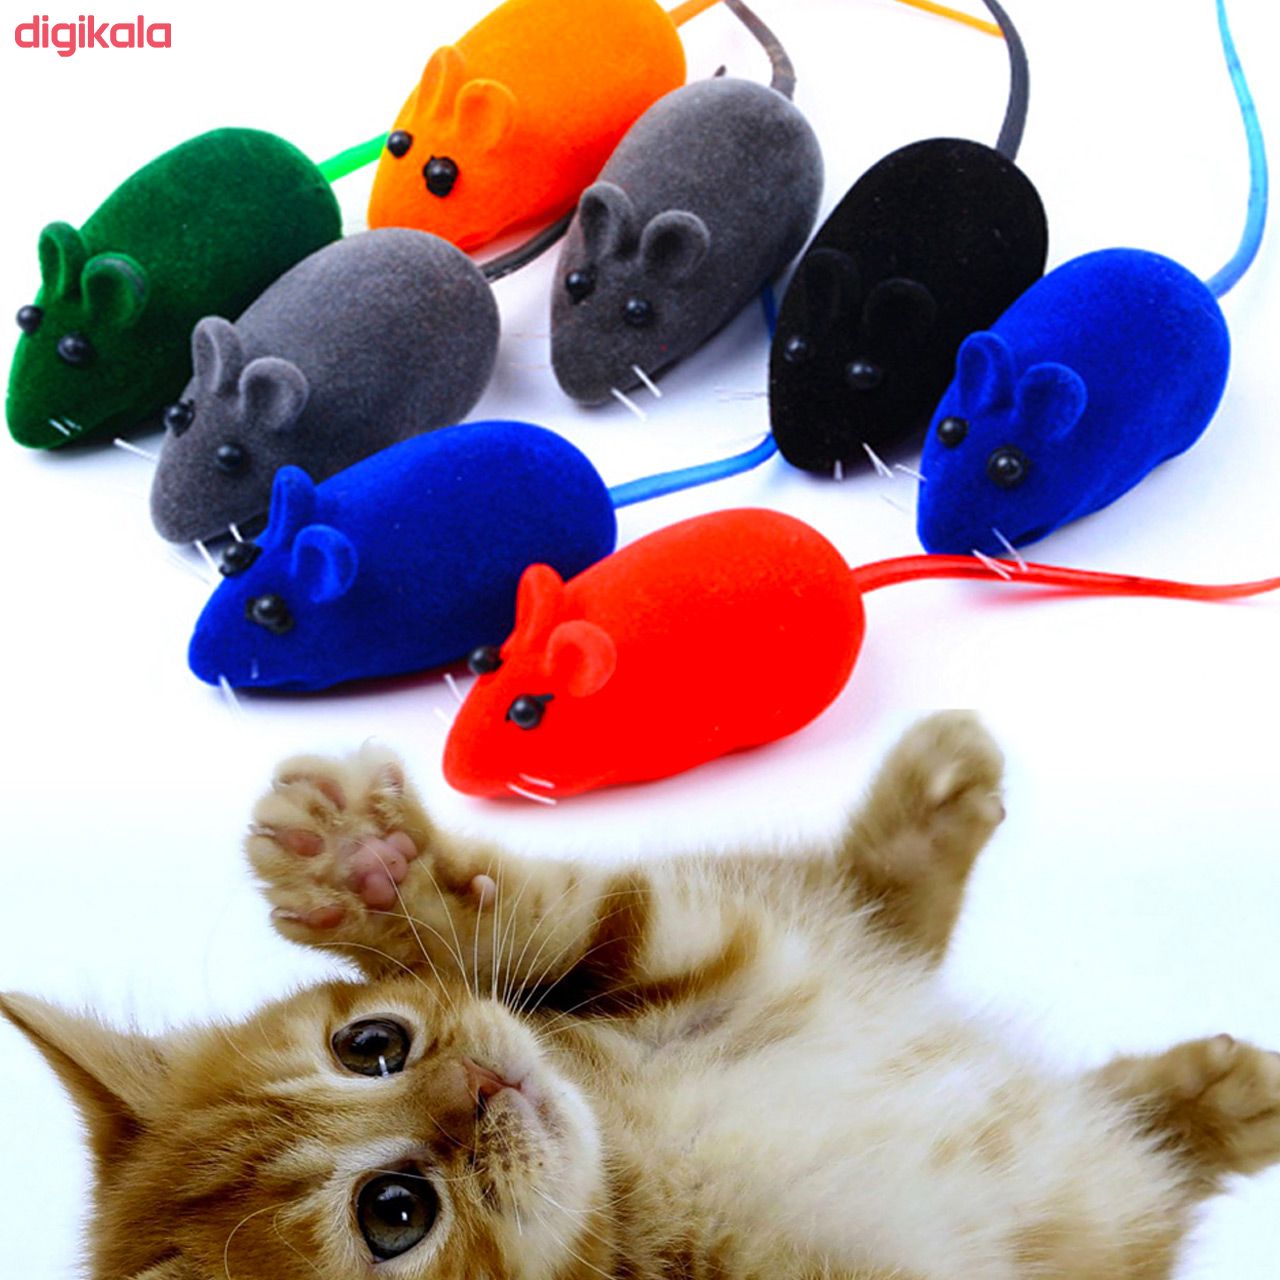  اسباب بازی گربه مدل Ratty Squeak